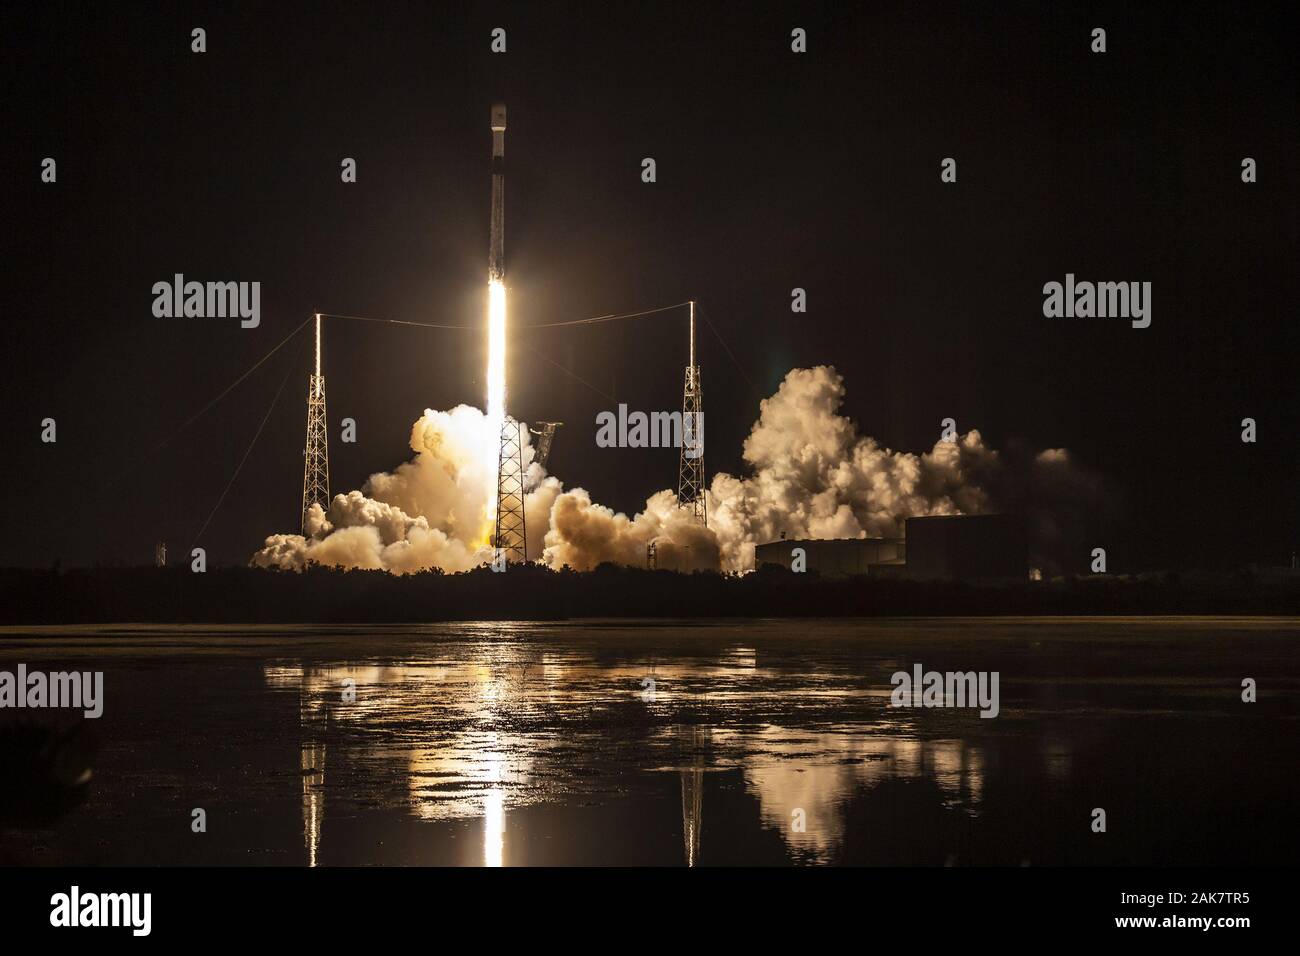 Cape Canaveral, Stati Uniti. Il 6 gennaio, 2020. Il 6 gennaio, 2020, SpaceX ha lanciato il suo terzo payload di 60 satelliti Starlink from Space Launch Complex 40 (SLC-40) alla Cape Canaveral Air Force Station, Florida. Falcon 9's primo stadio supportata una missione Starlink nel maggio 2019, l'iridio-8 missione nel gennaio 2019, e il Telstar 18 VANTAGE missione nel settembre 2018. A seguito di separazione di stadio, sbarcati SpaceX Falcon 9's prima tappa sul 'Naturalmente io ti amo ancora' droneship, che era di stanza nell'Oceano Atlantico. Foto di SpaceX/UPI Credito: UPI/Alamy Live News Foto Stock